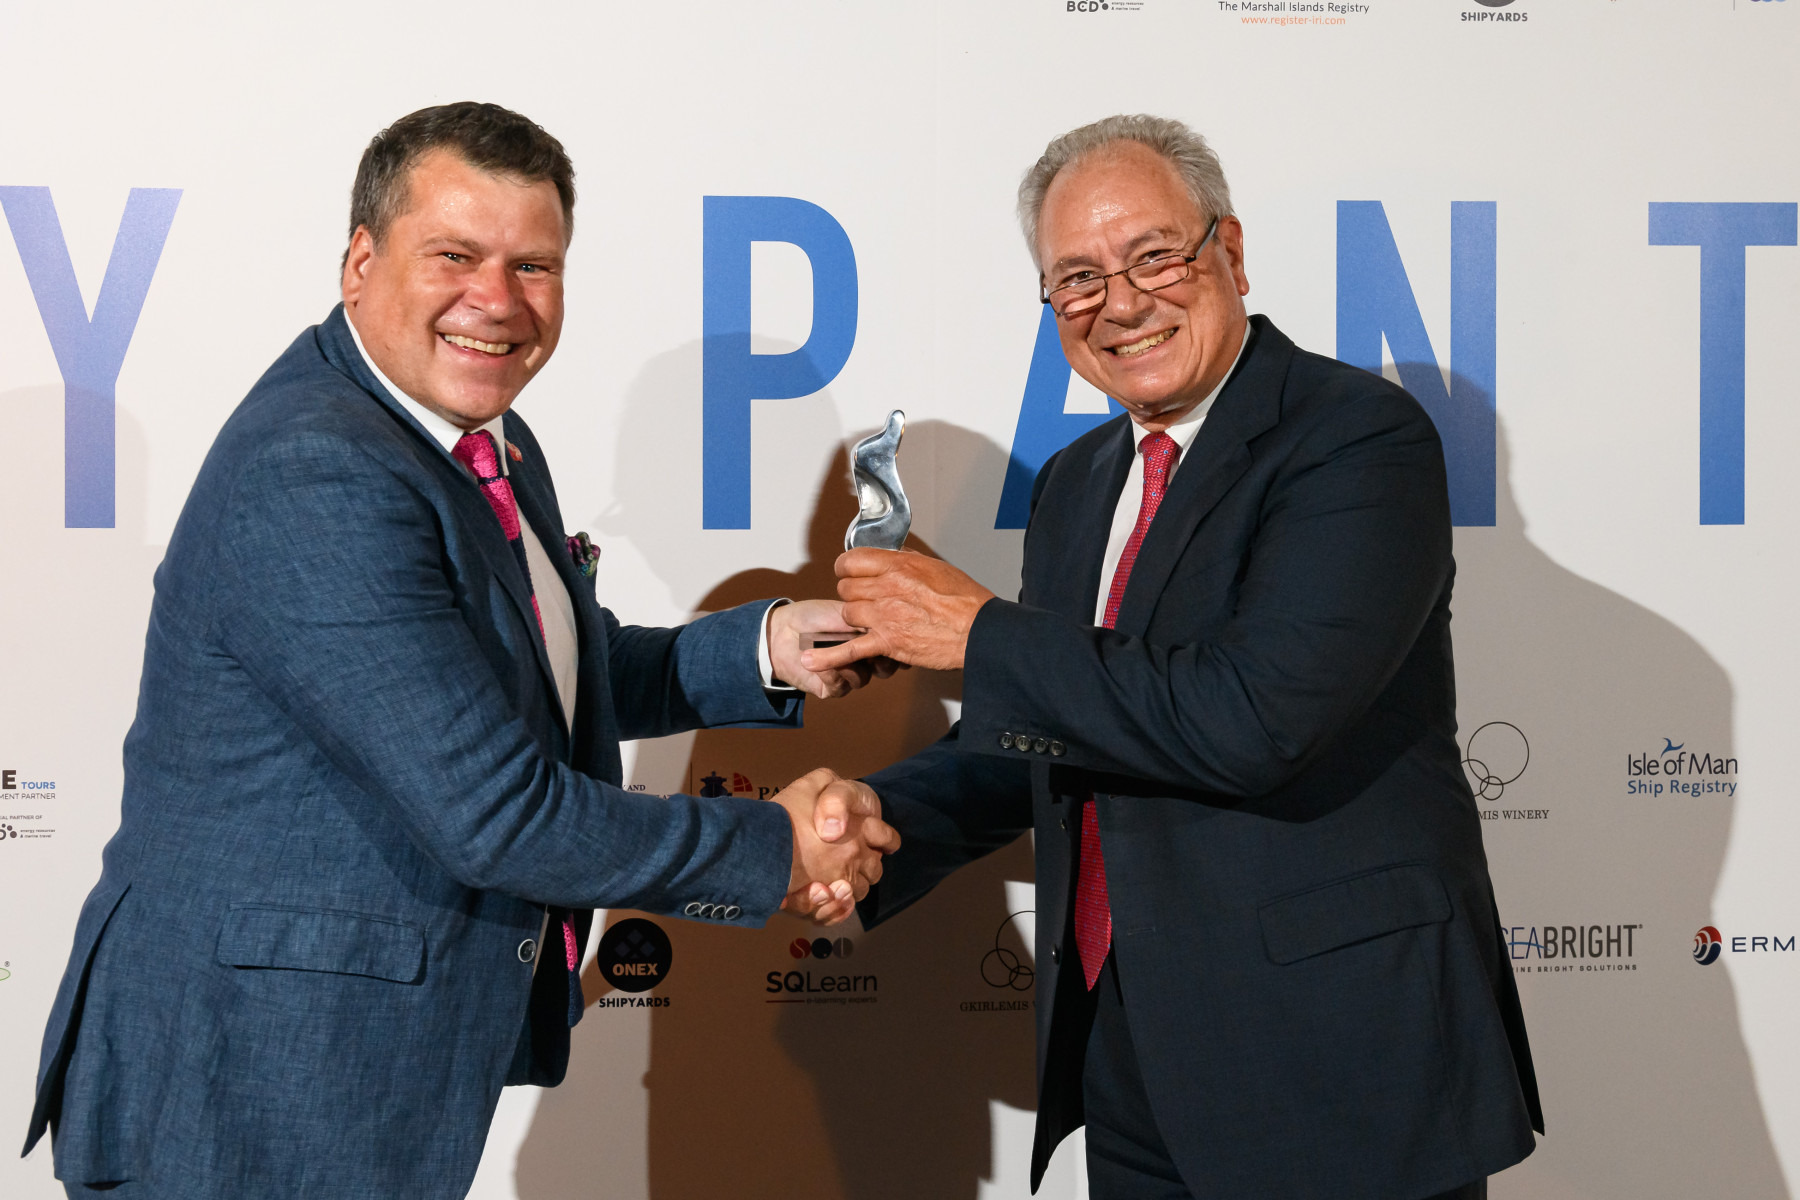 Το Βραβείο Ευκράντη 2022 για τη Διεθνή Προβολή της Ελληνικής Ναυτιλίας απονεμήθηκε στον Κωνσταντίνο Καρούση, Director της Chios Navigation.